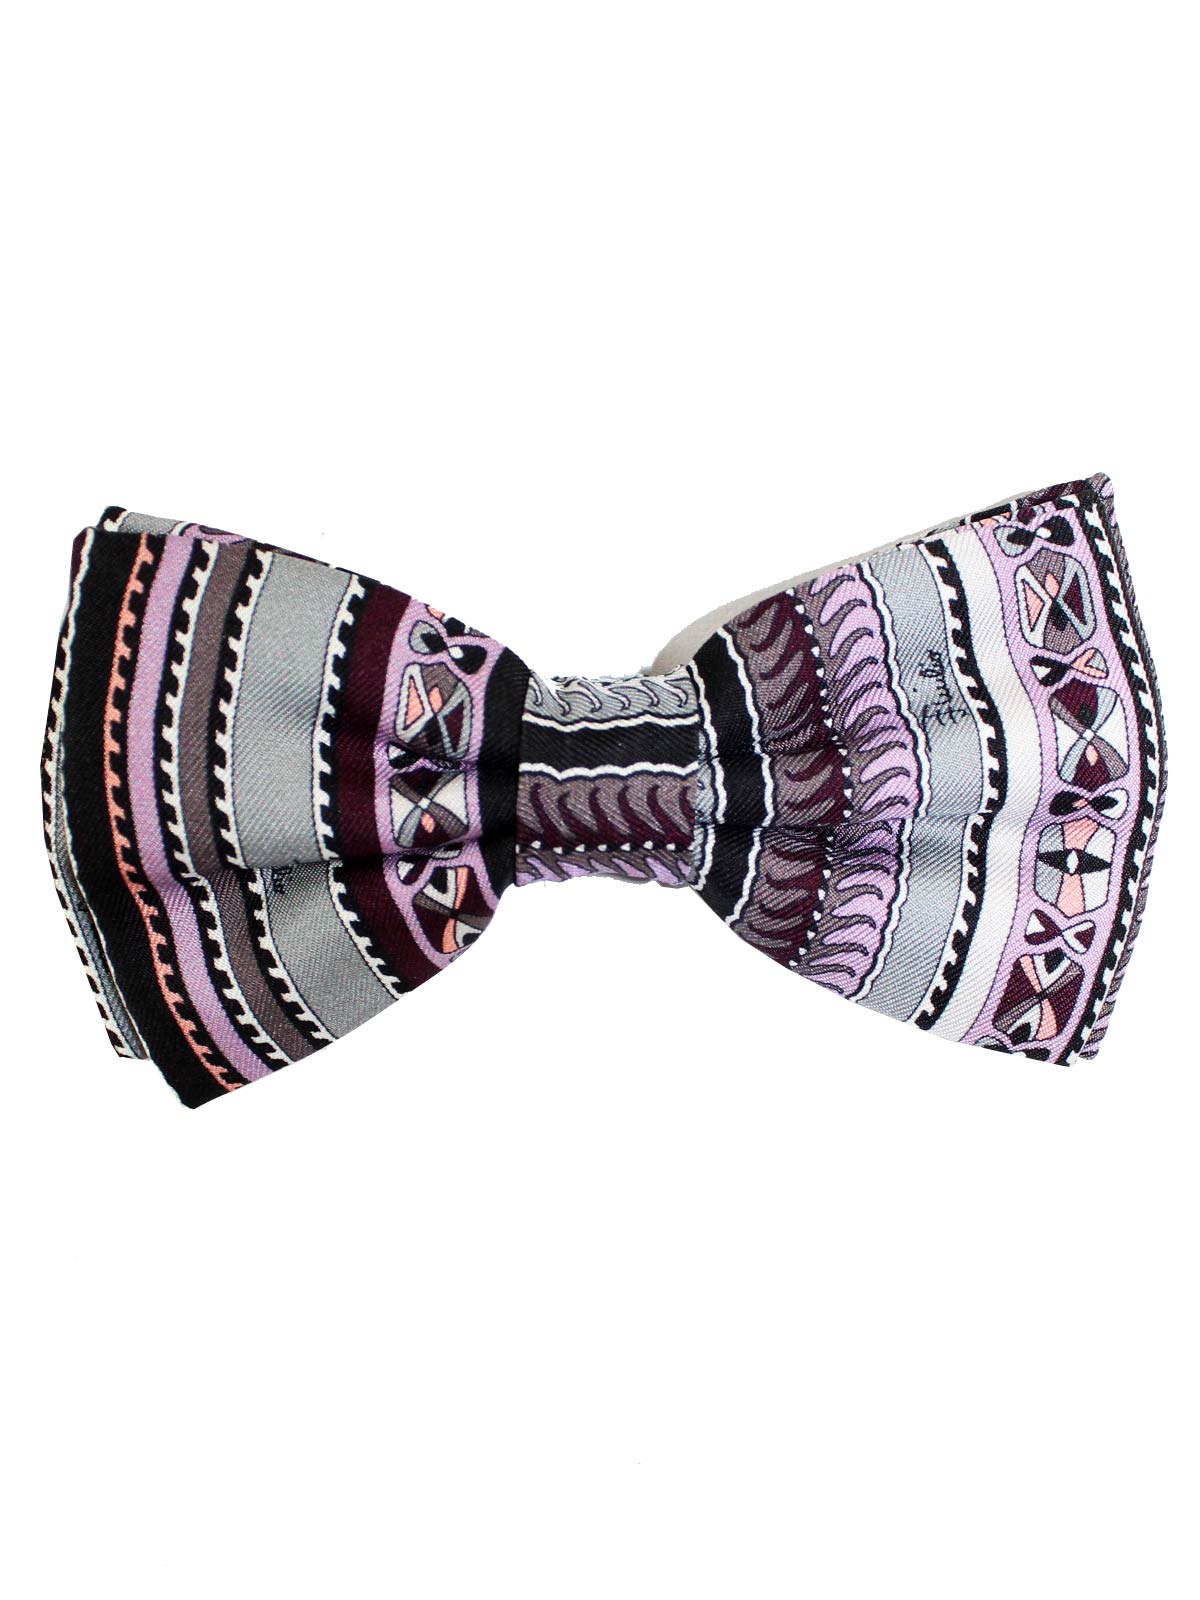 Emilio Pucci Silk Bow Tie Maroon Gray Pink Pre Tied SALE